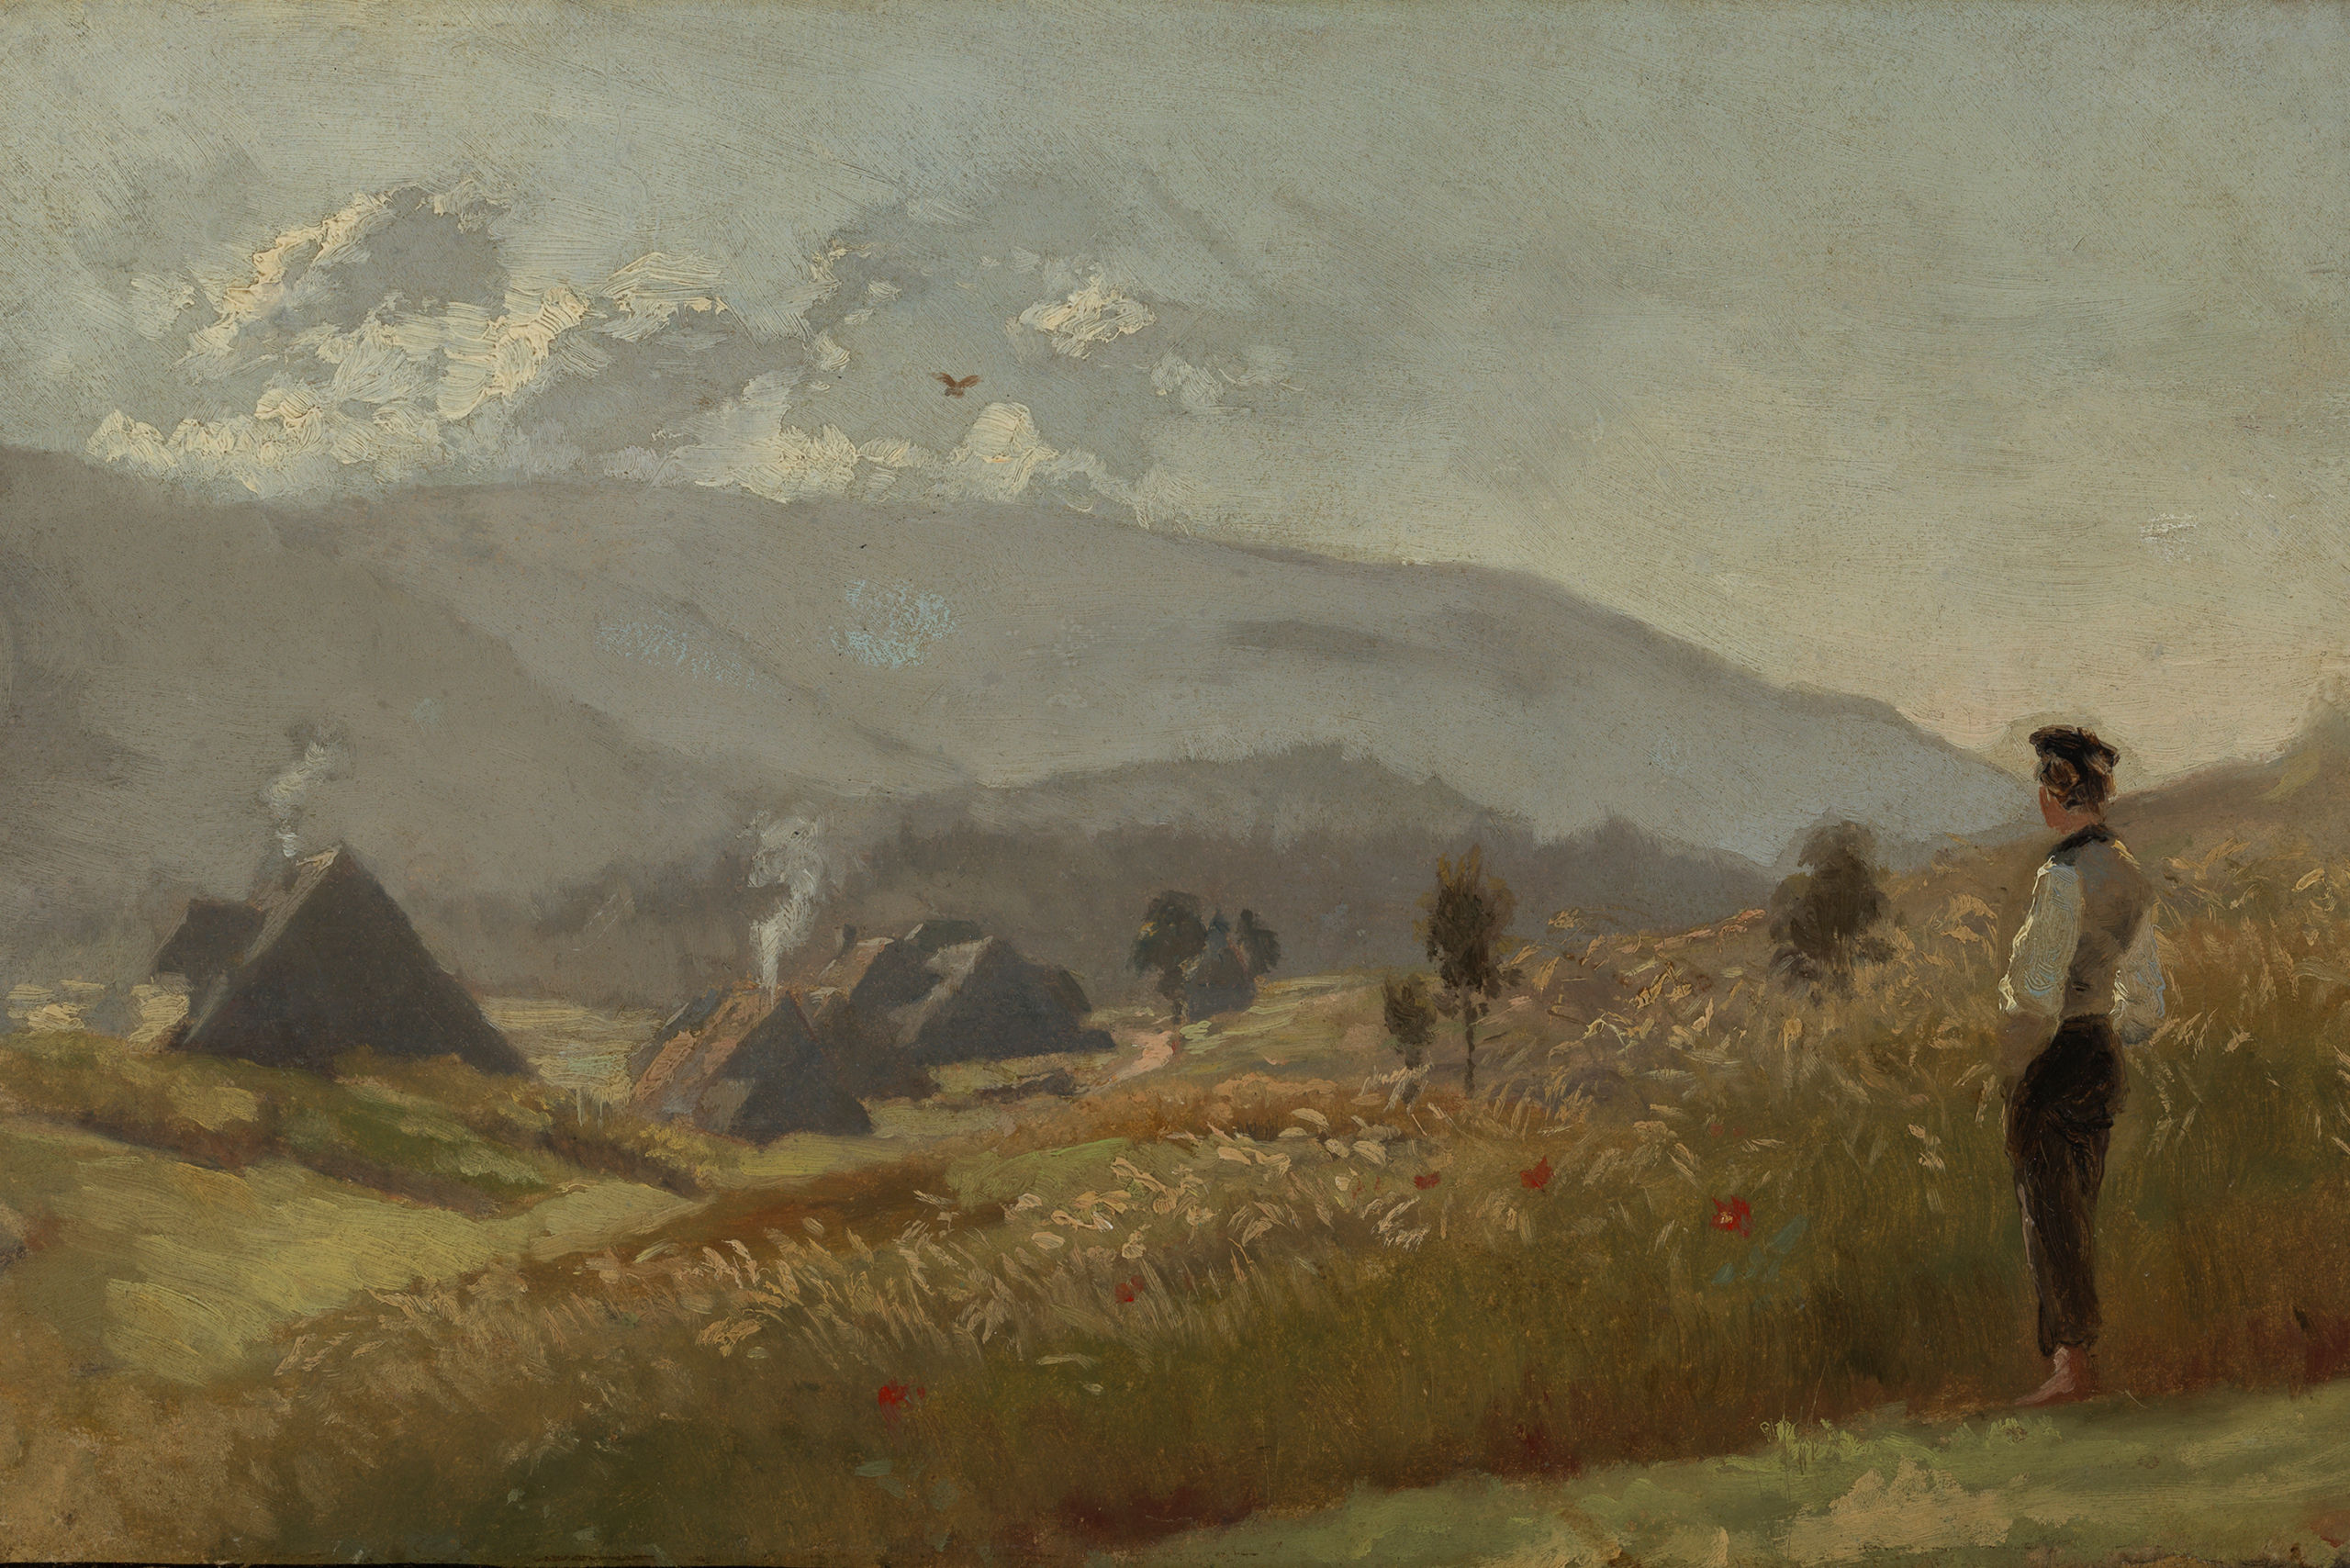 Das Kunstwerk zeigt einen jungen Bauern, der über ein Kornfeld blickt. In der Ferne sind Häuser und Berge zu erkennen.